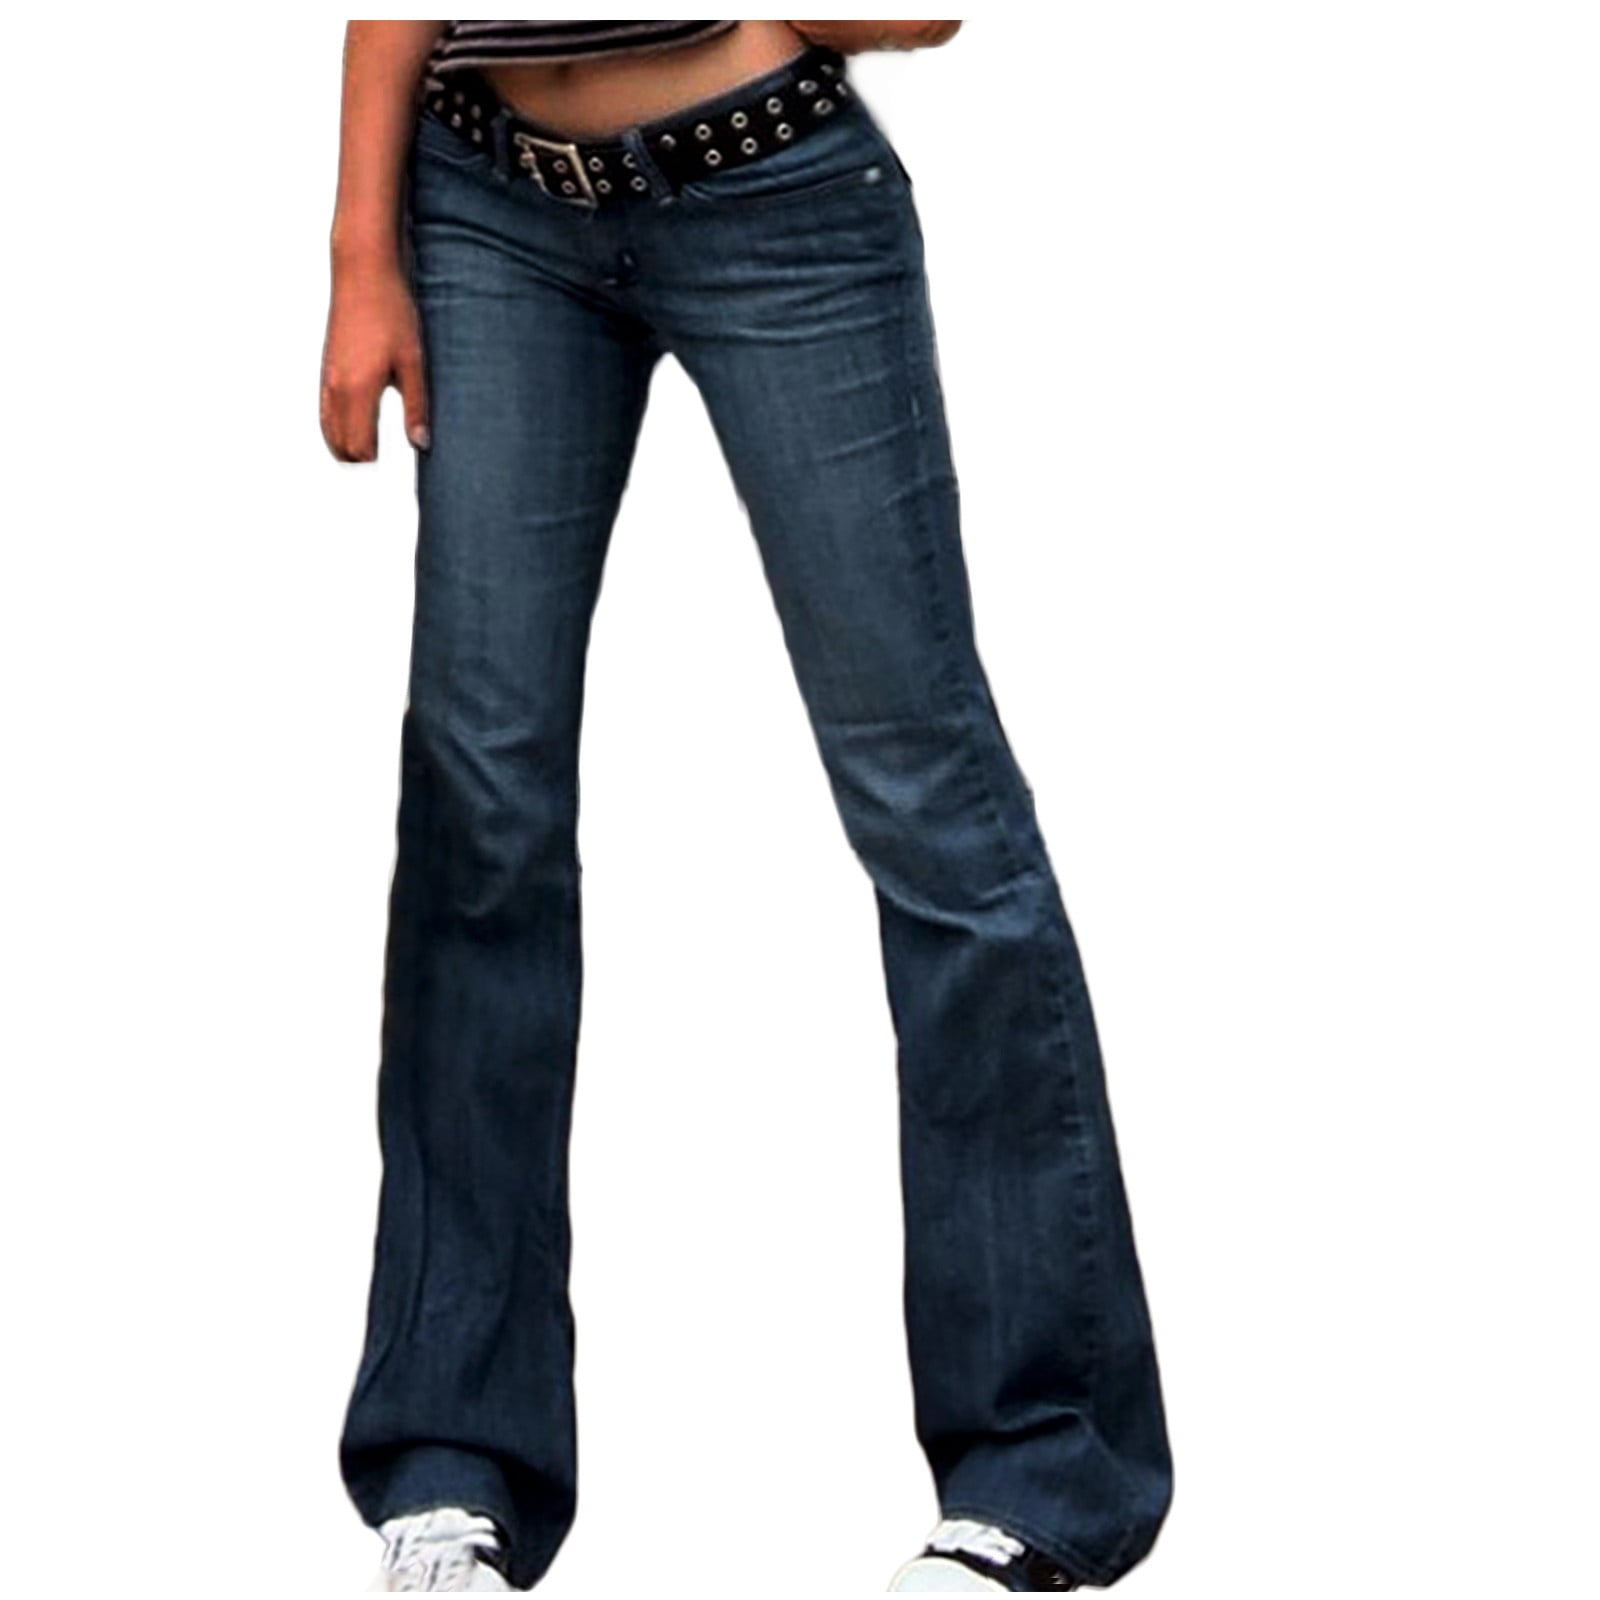 Bigersell Women's Low Pro Jeans Full Length Pants Jeans Women